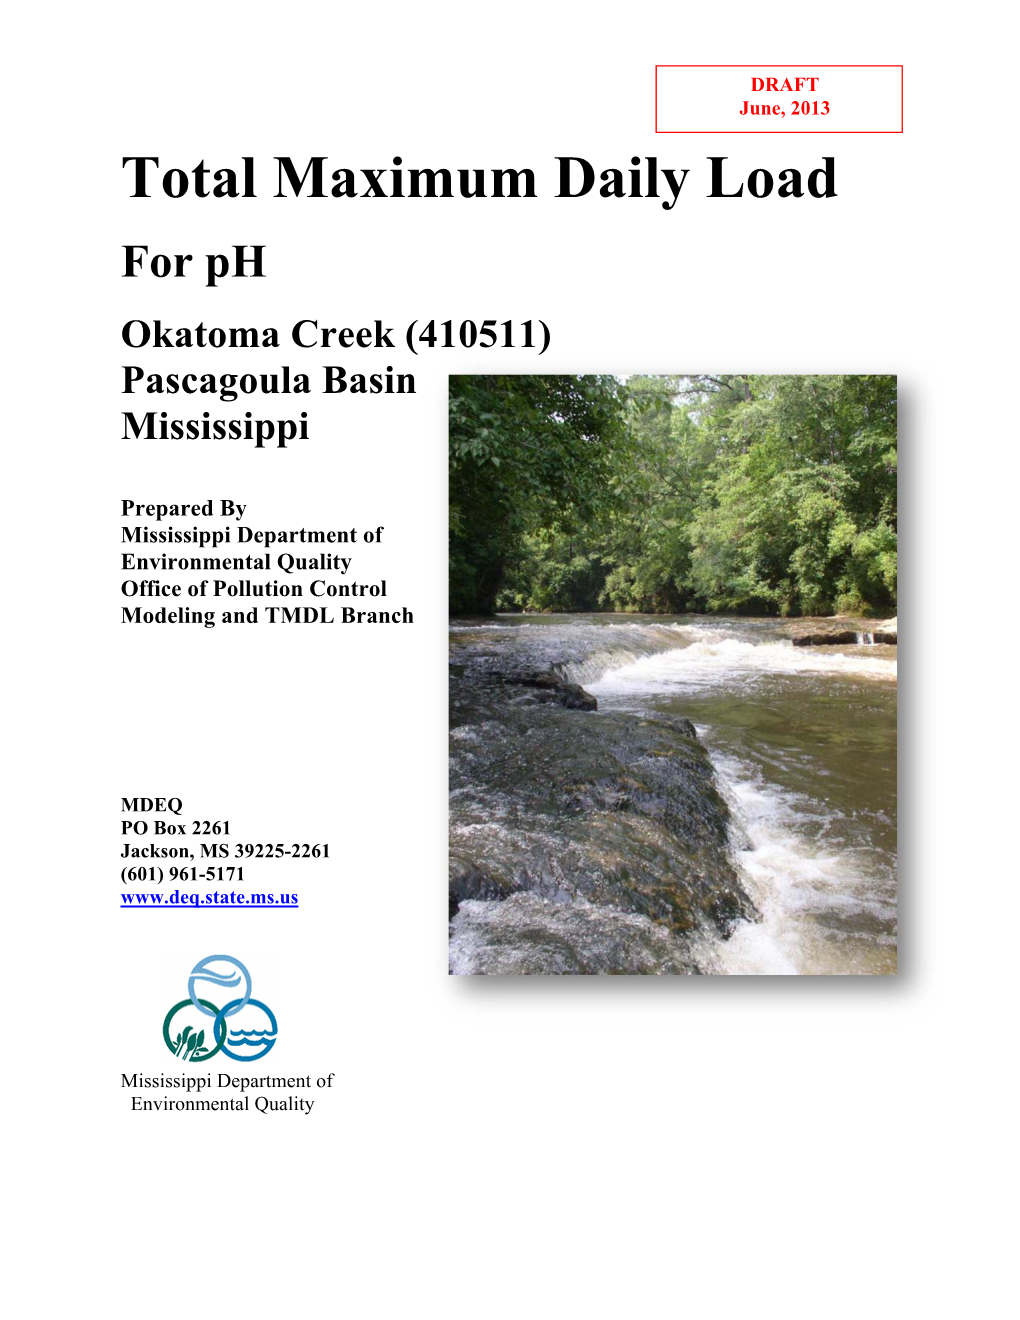 Total Maximum Daily Load for Ph Okatoma Creek